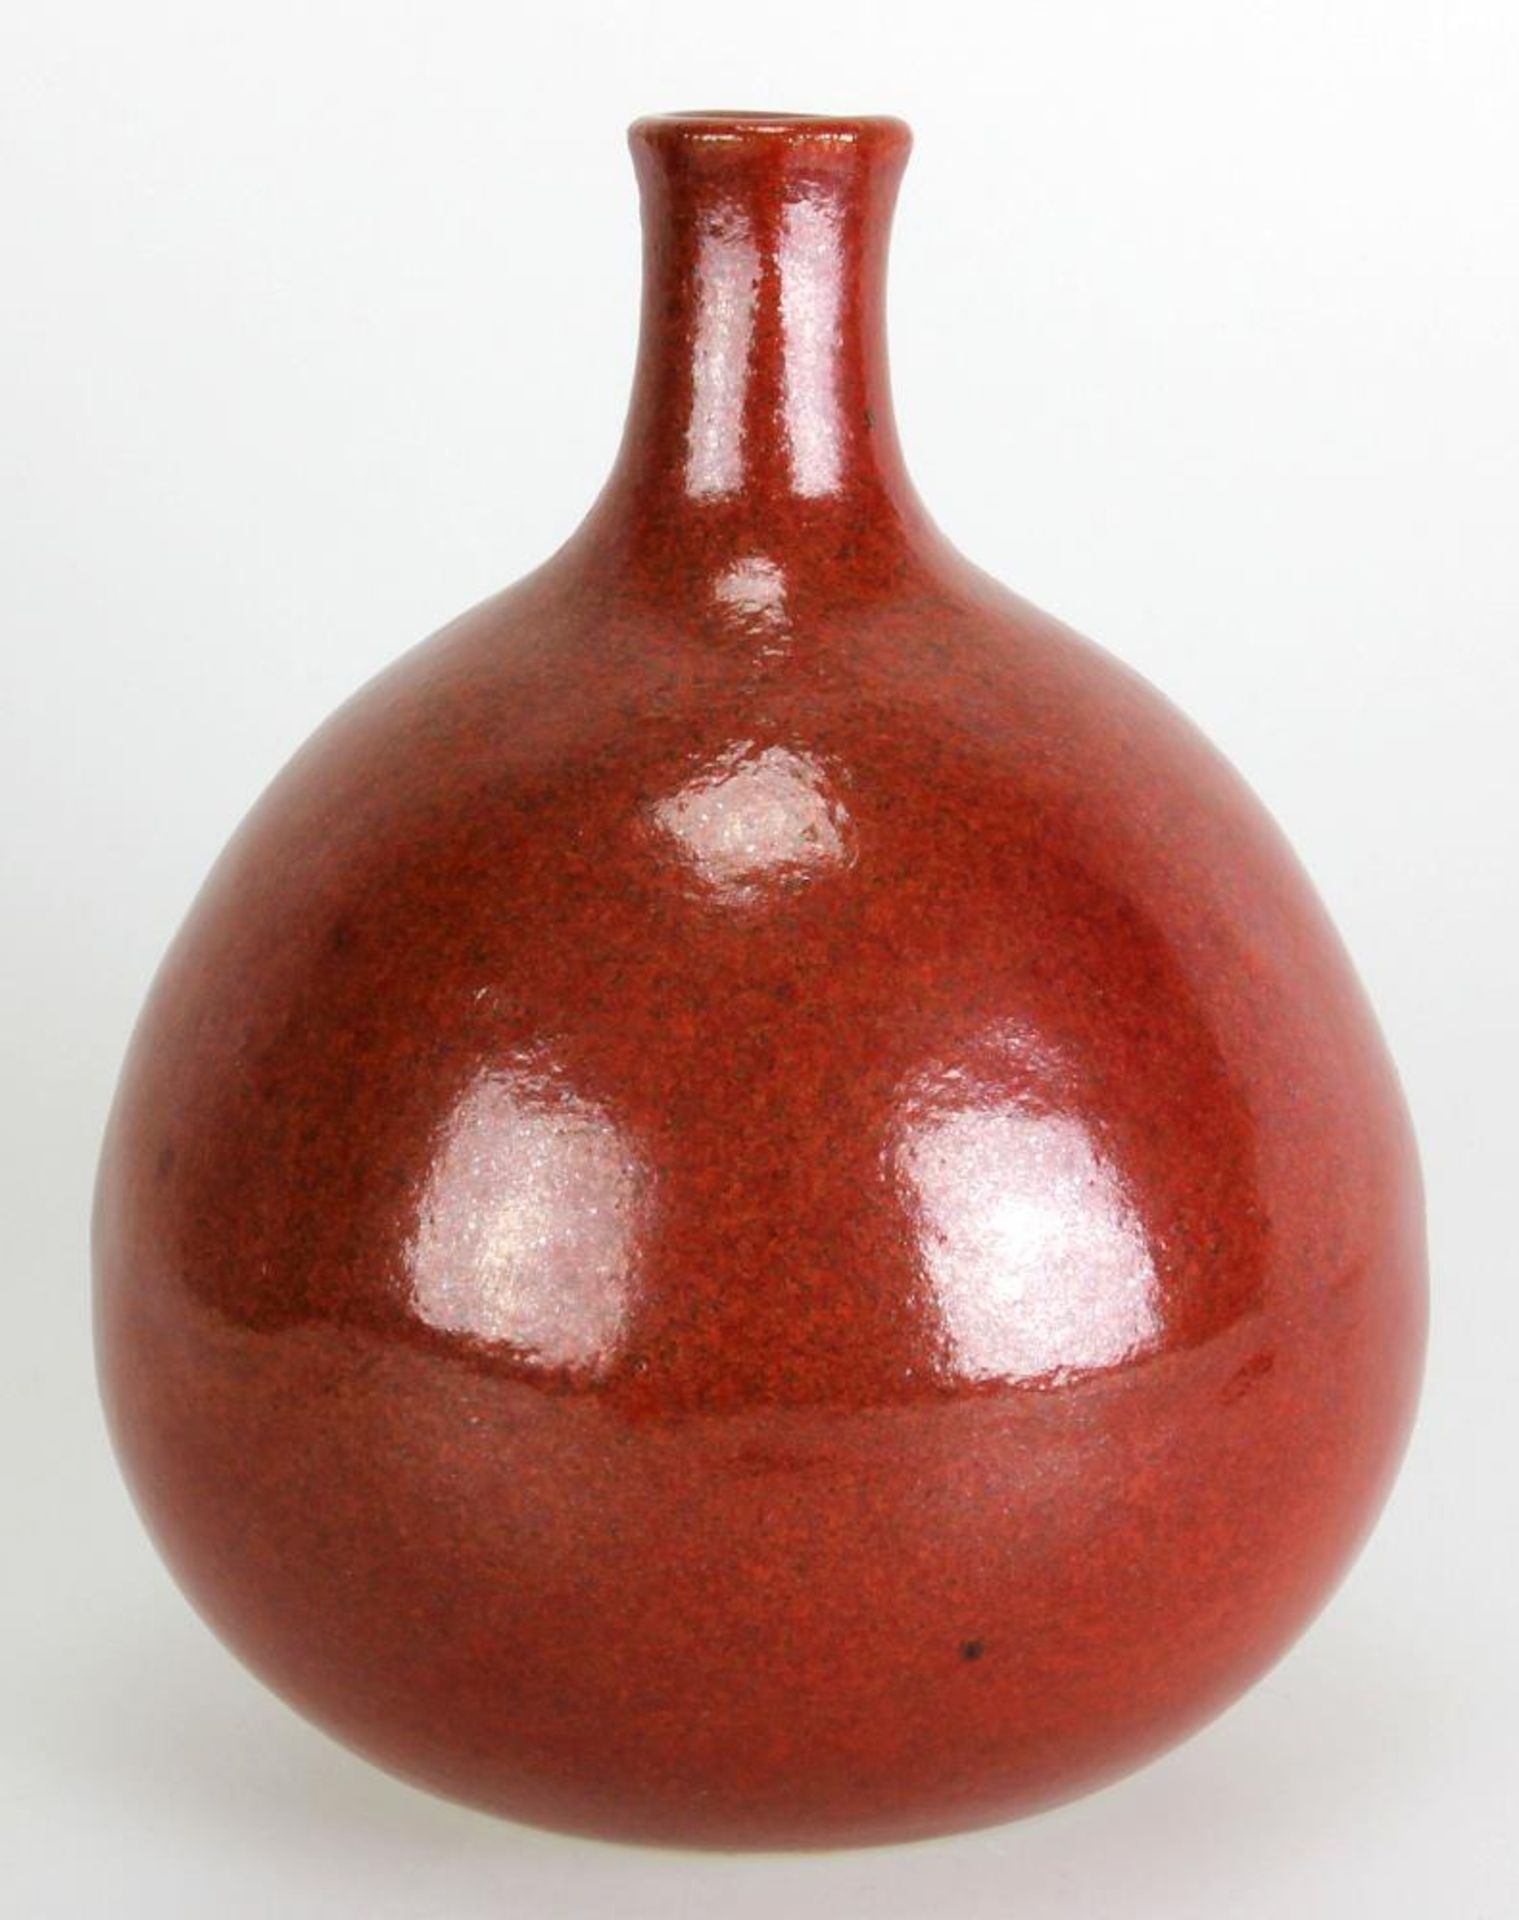 Horst Kerstan 1941 Frankfurt – 2005 Kandern. Vase in Apfelform. Heller Scherben mit rötlich/